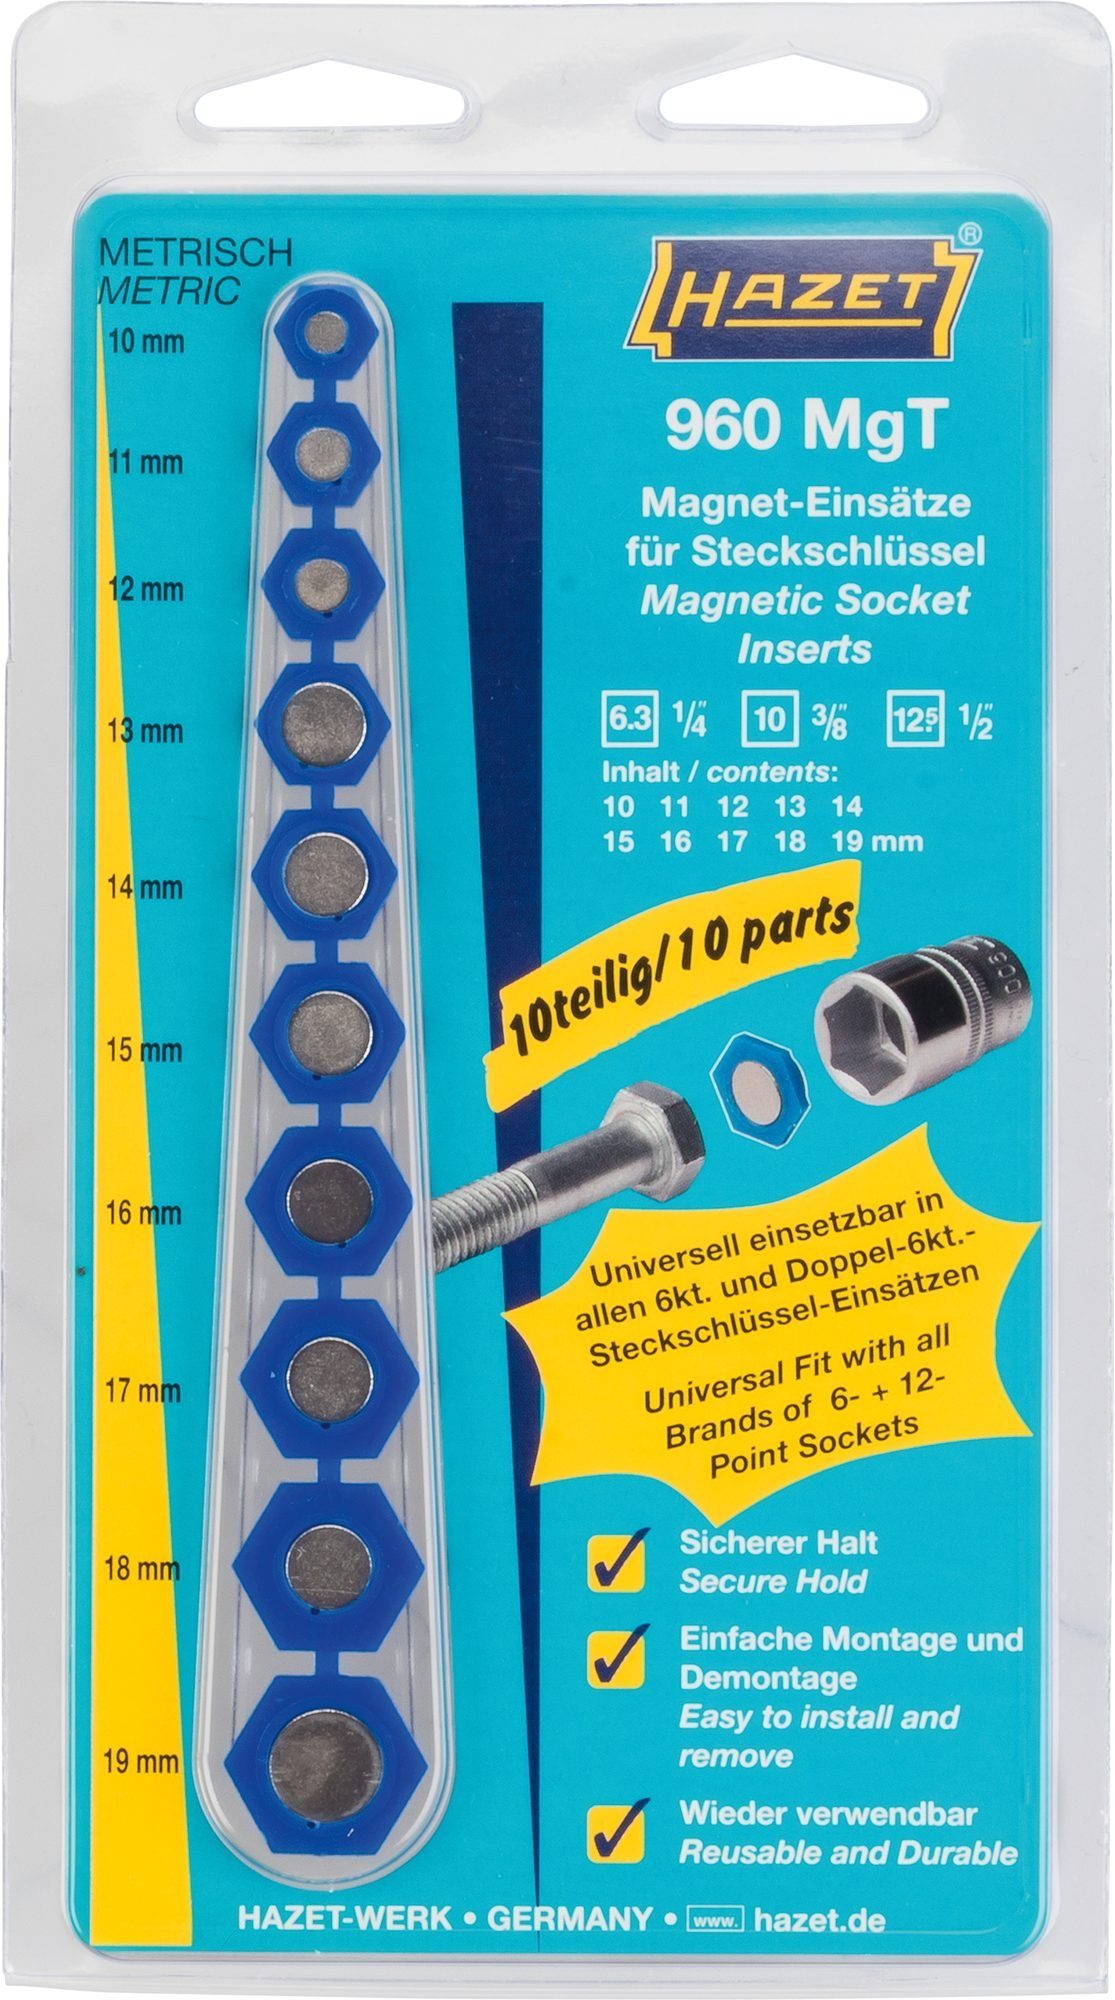 HAZET Steckschlüssel Hazet Magnet-Einsatz für Steckschlüssel, 960MGT